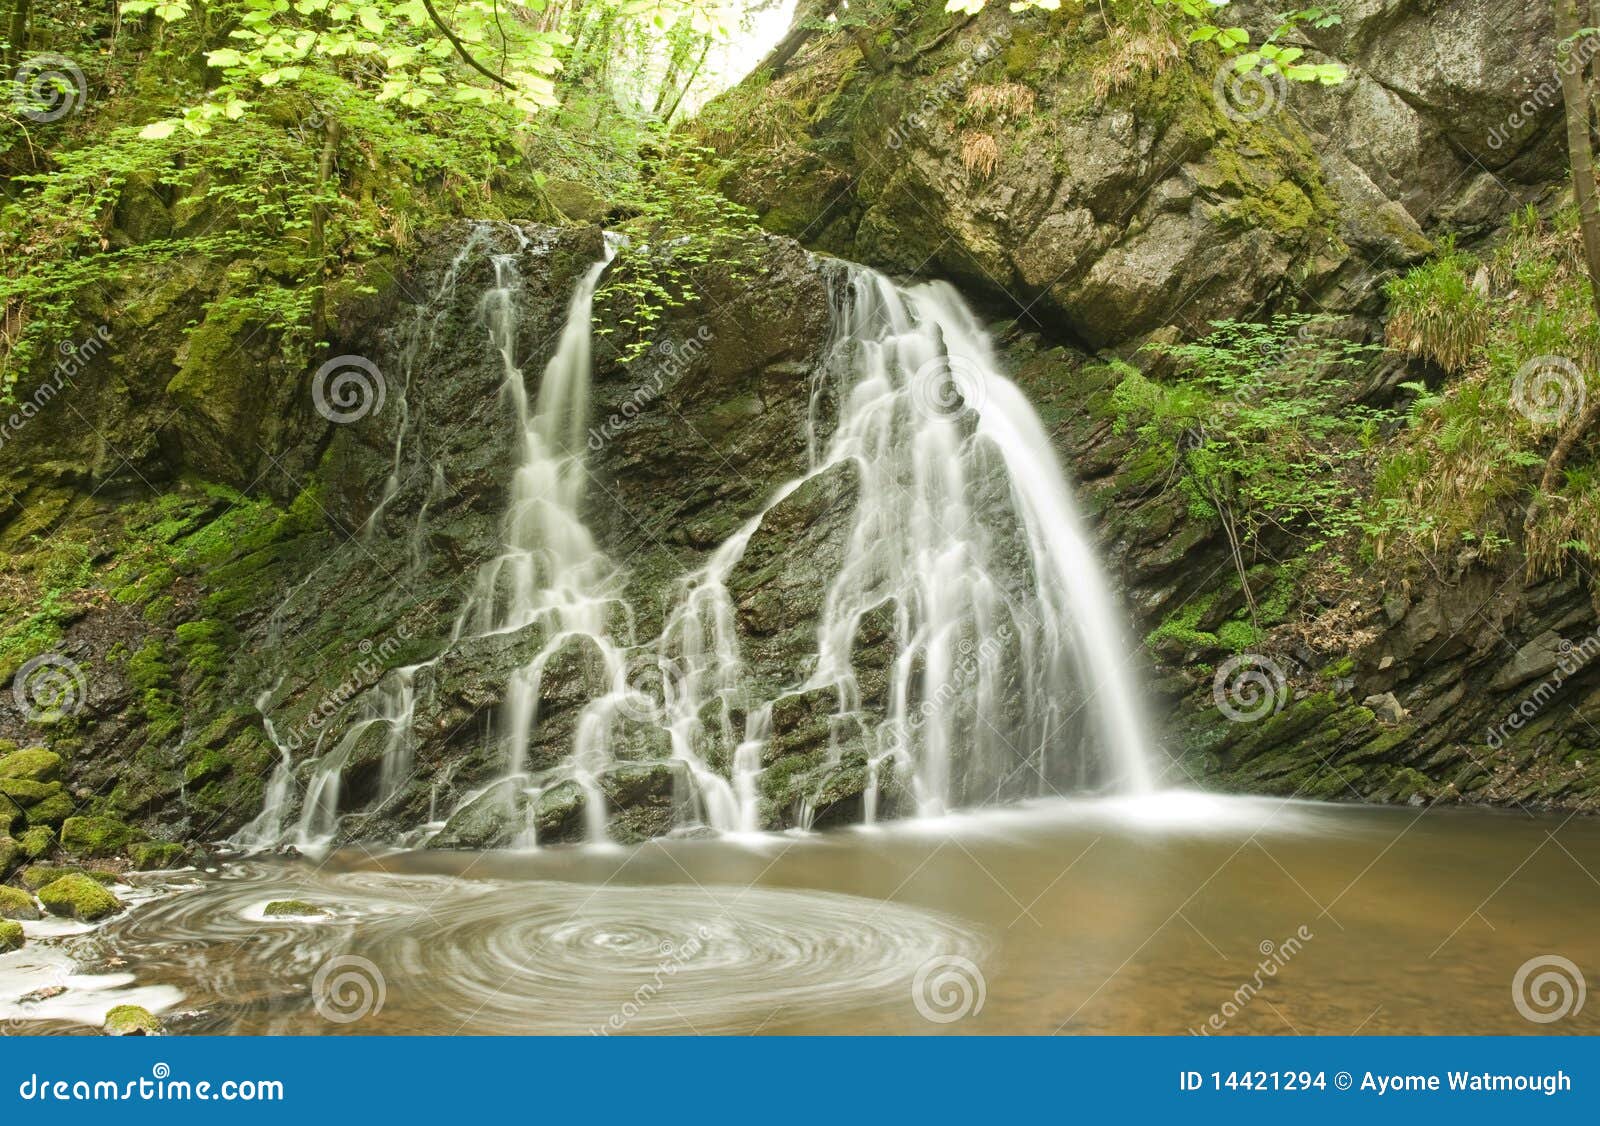 waterfall in the fairy glen.